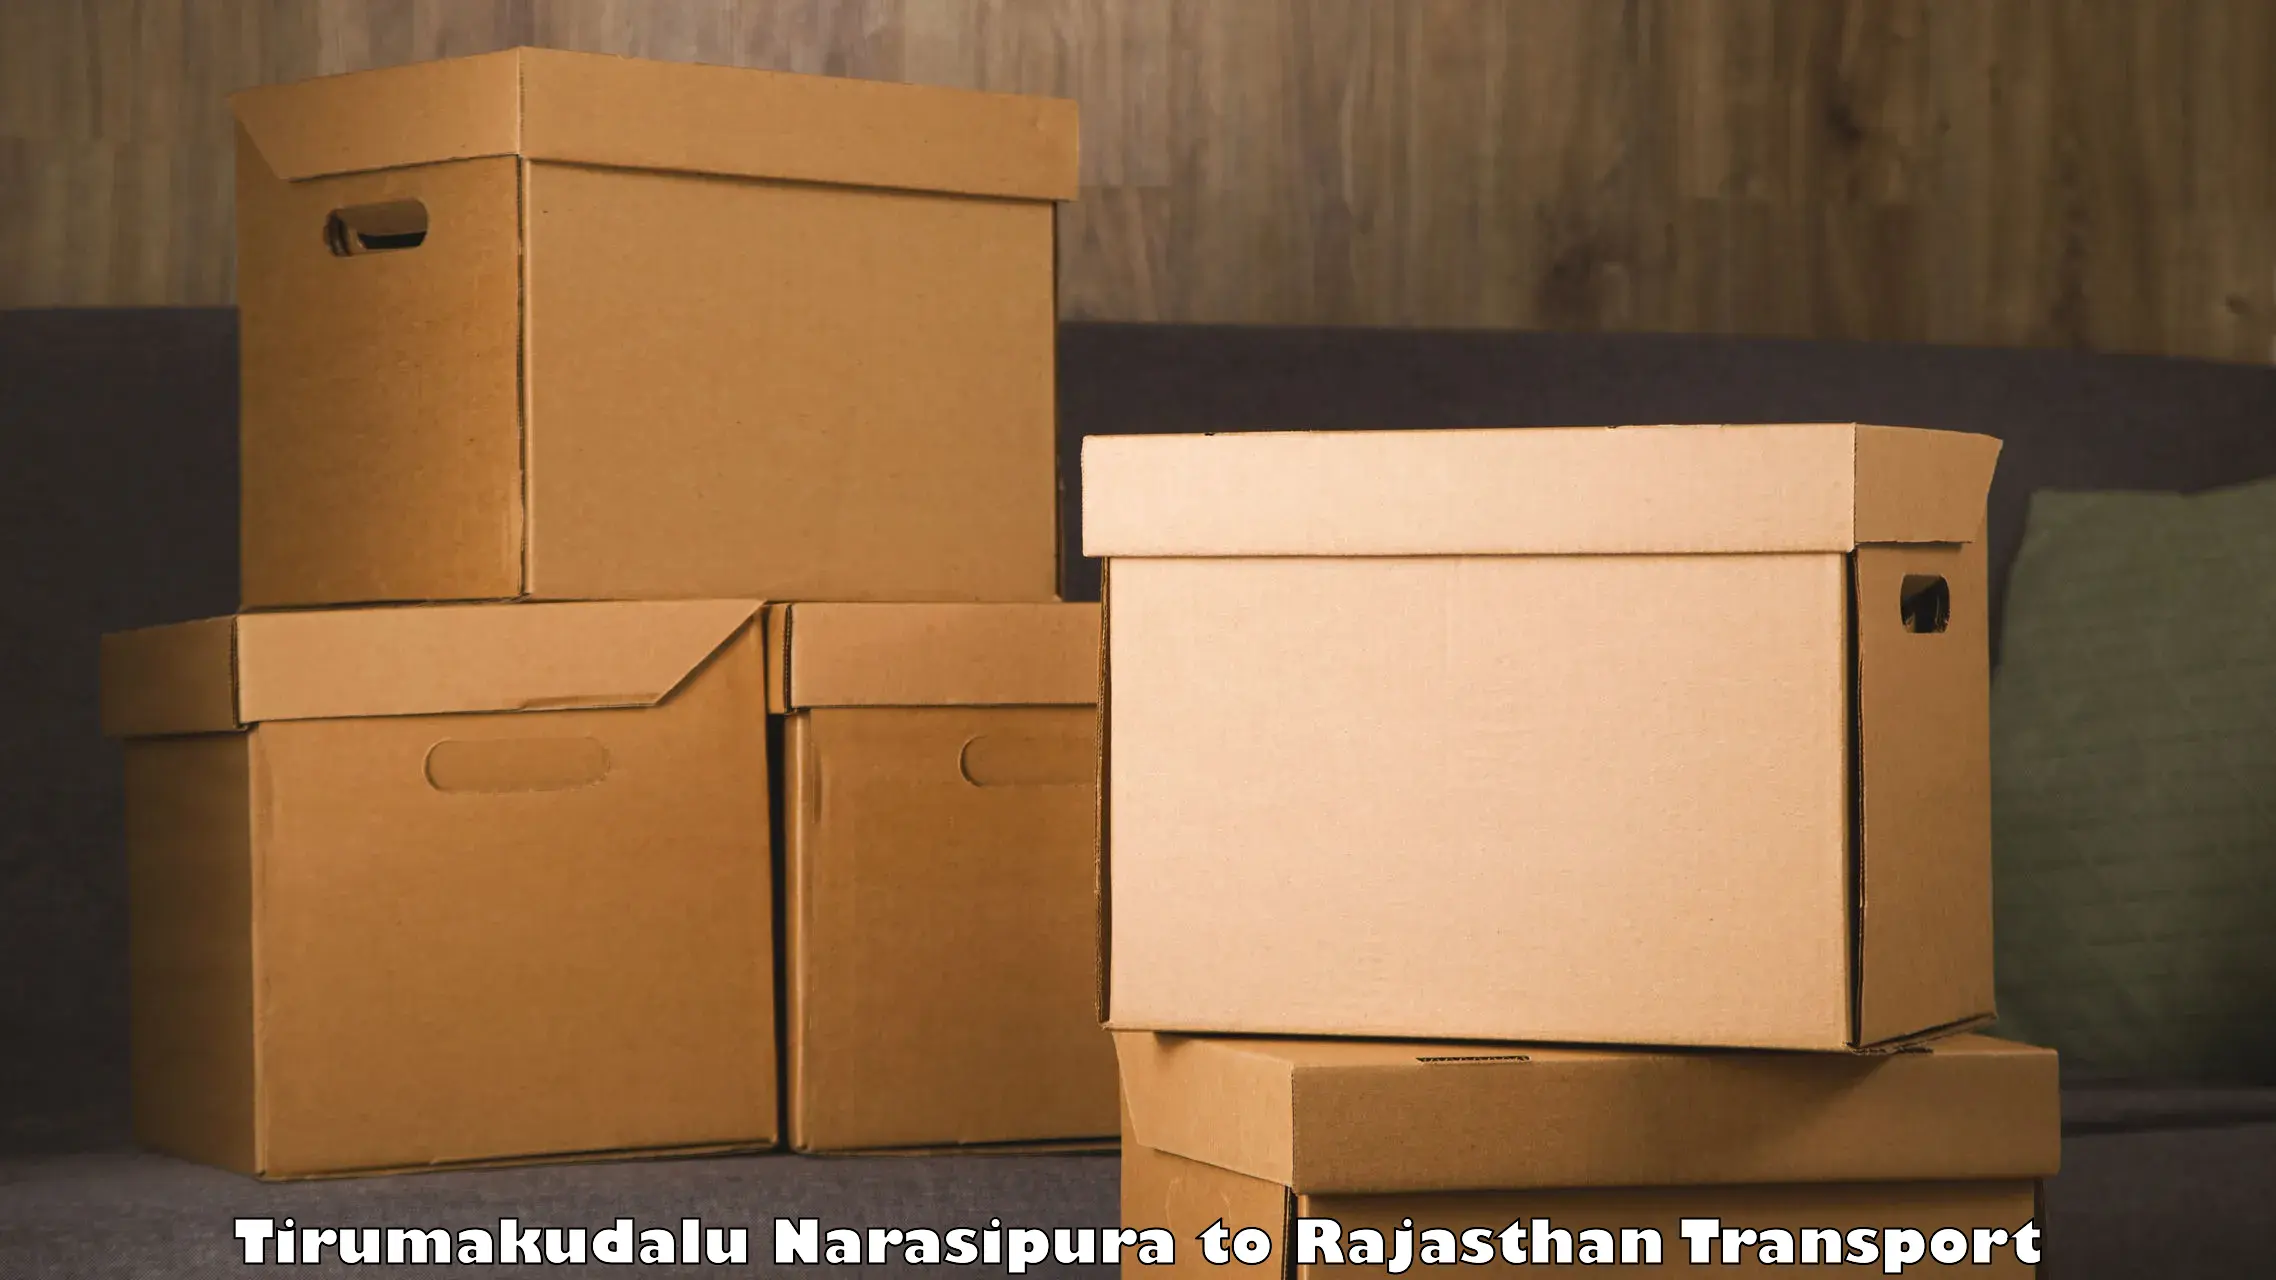 Container transport service Tirumakudalu Narasipura to Anupgarh